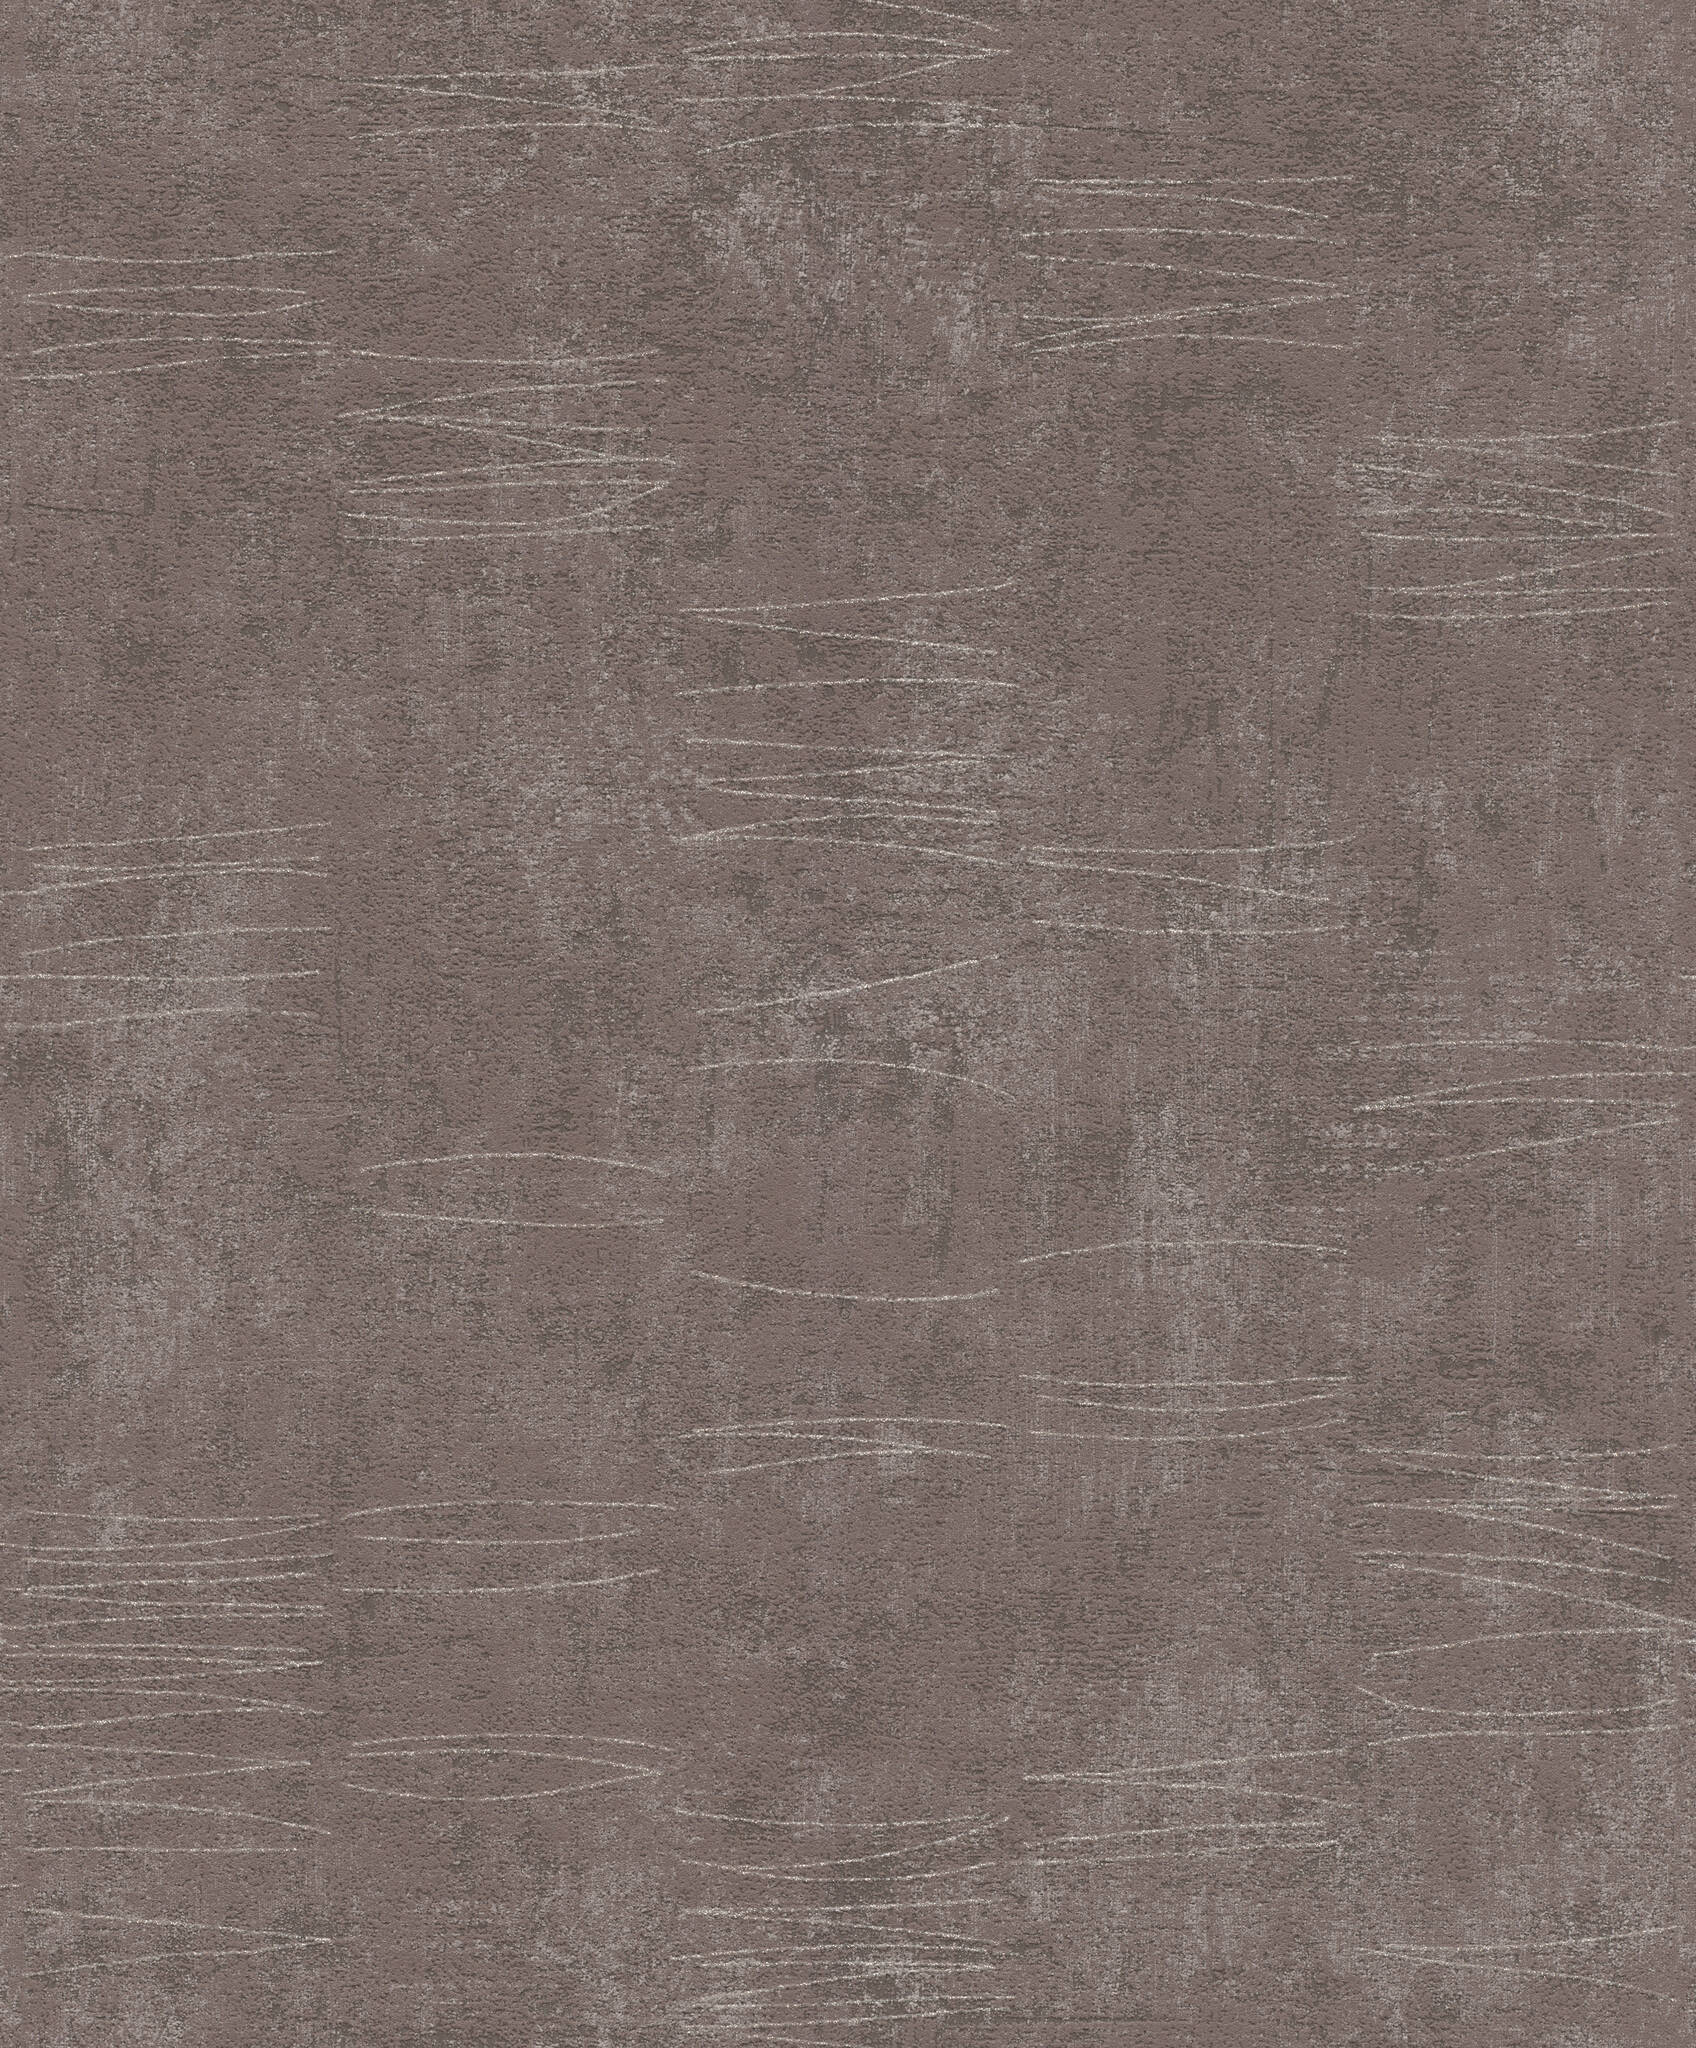 Vliestapete in Braun mit feinen Linien in Silber, Andy Wand 649970